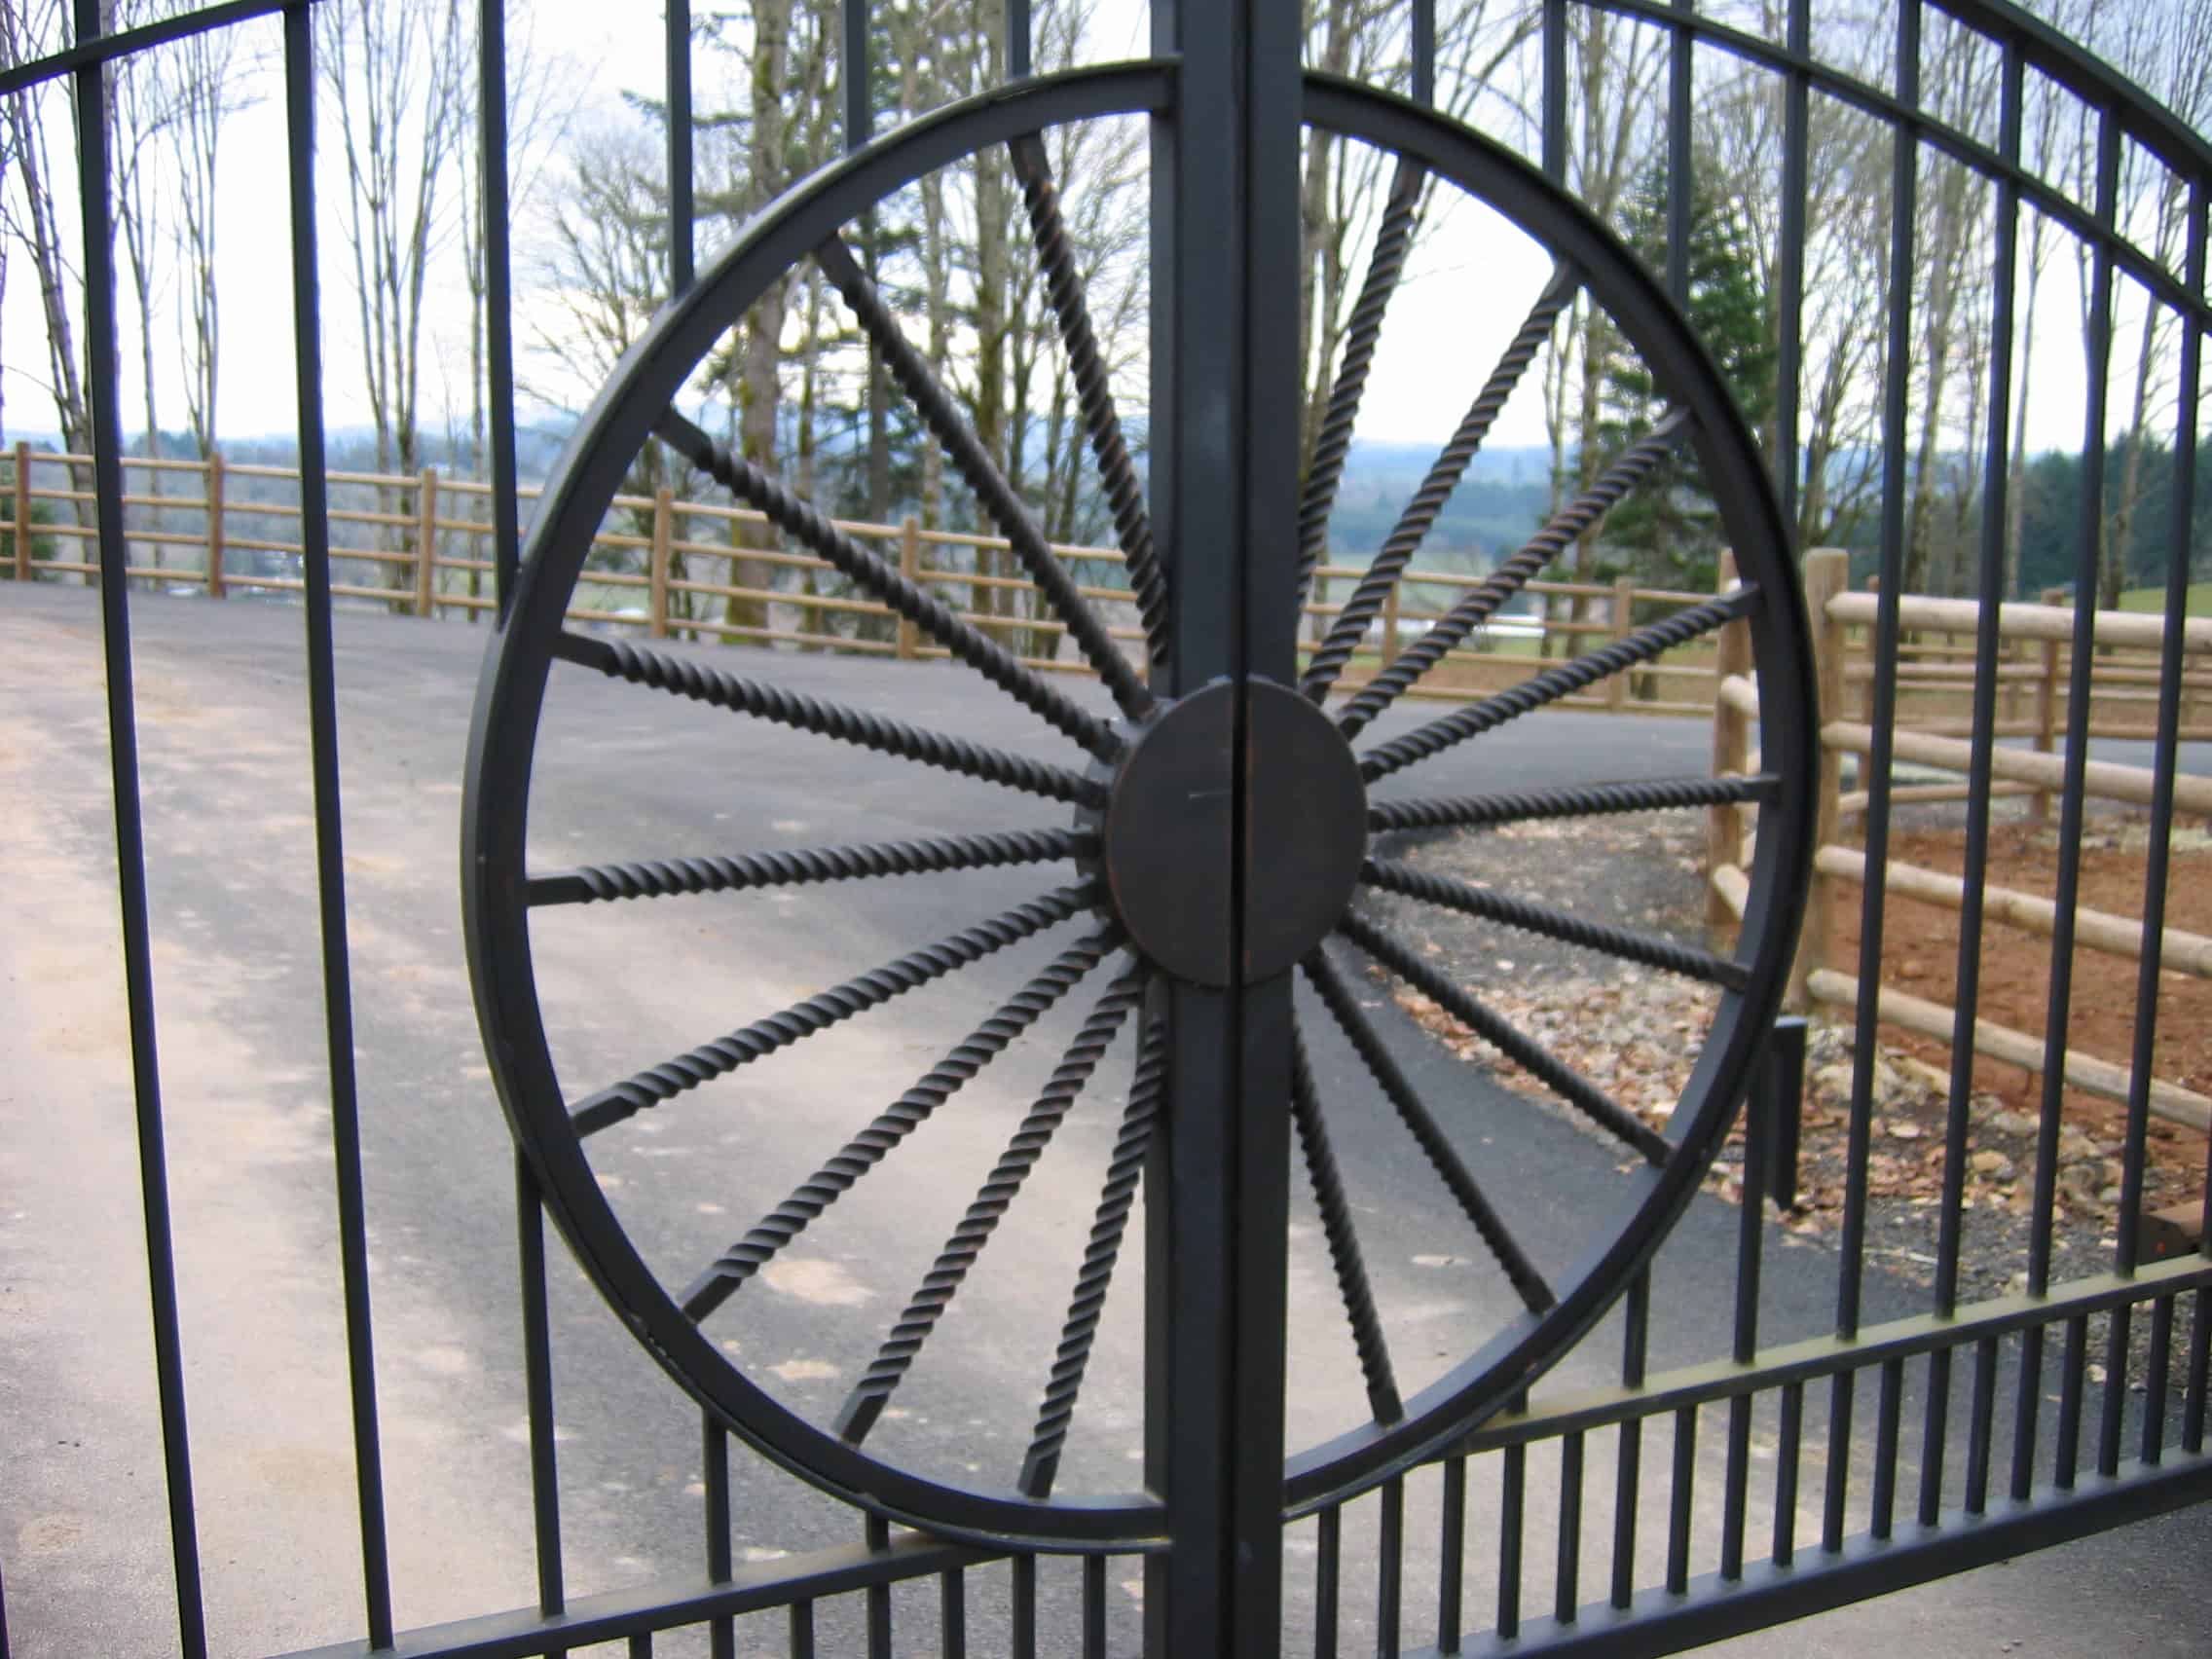 Western Wagon Wheel Gate Center Piece